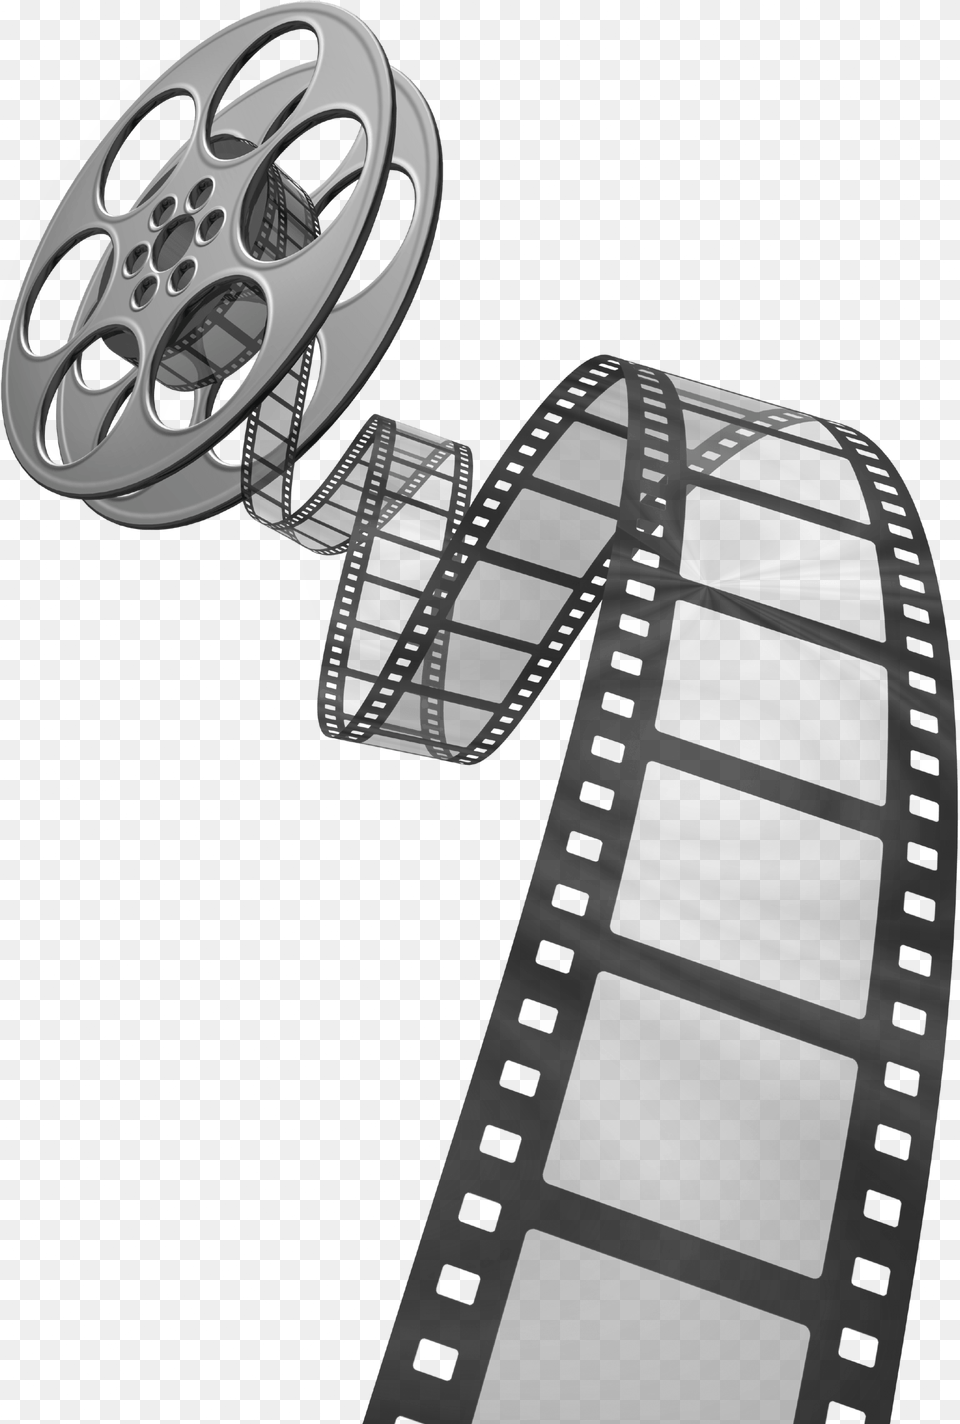 Background Movie Film Reel Film Reel, Machine, Wheel Free Png Download